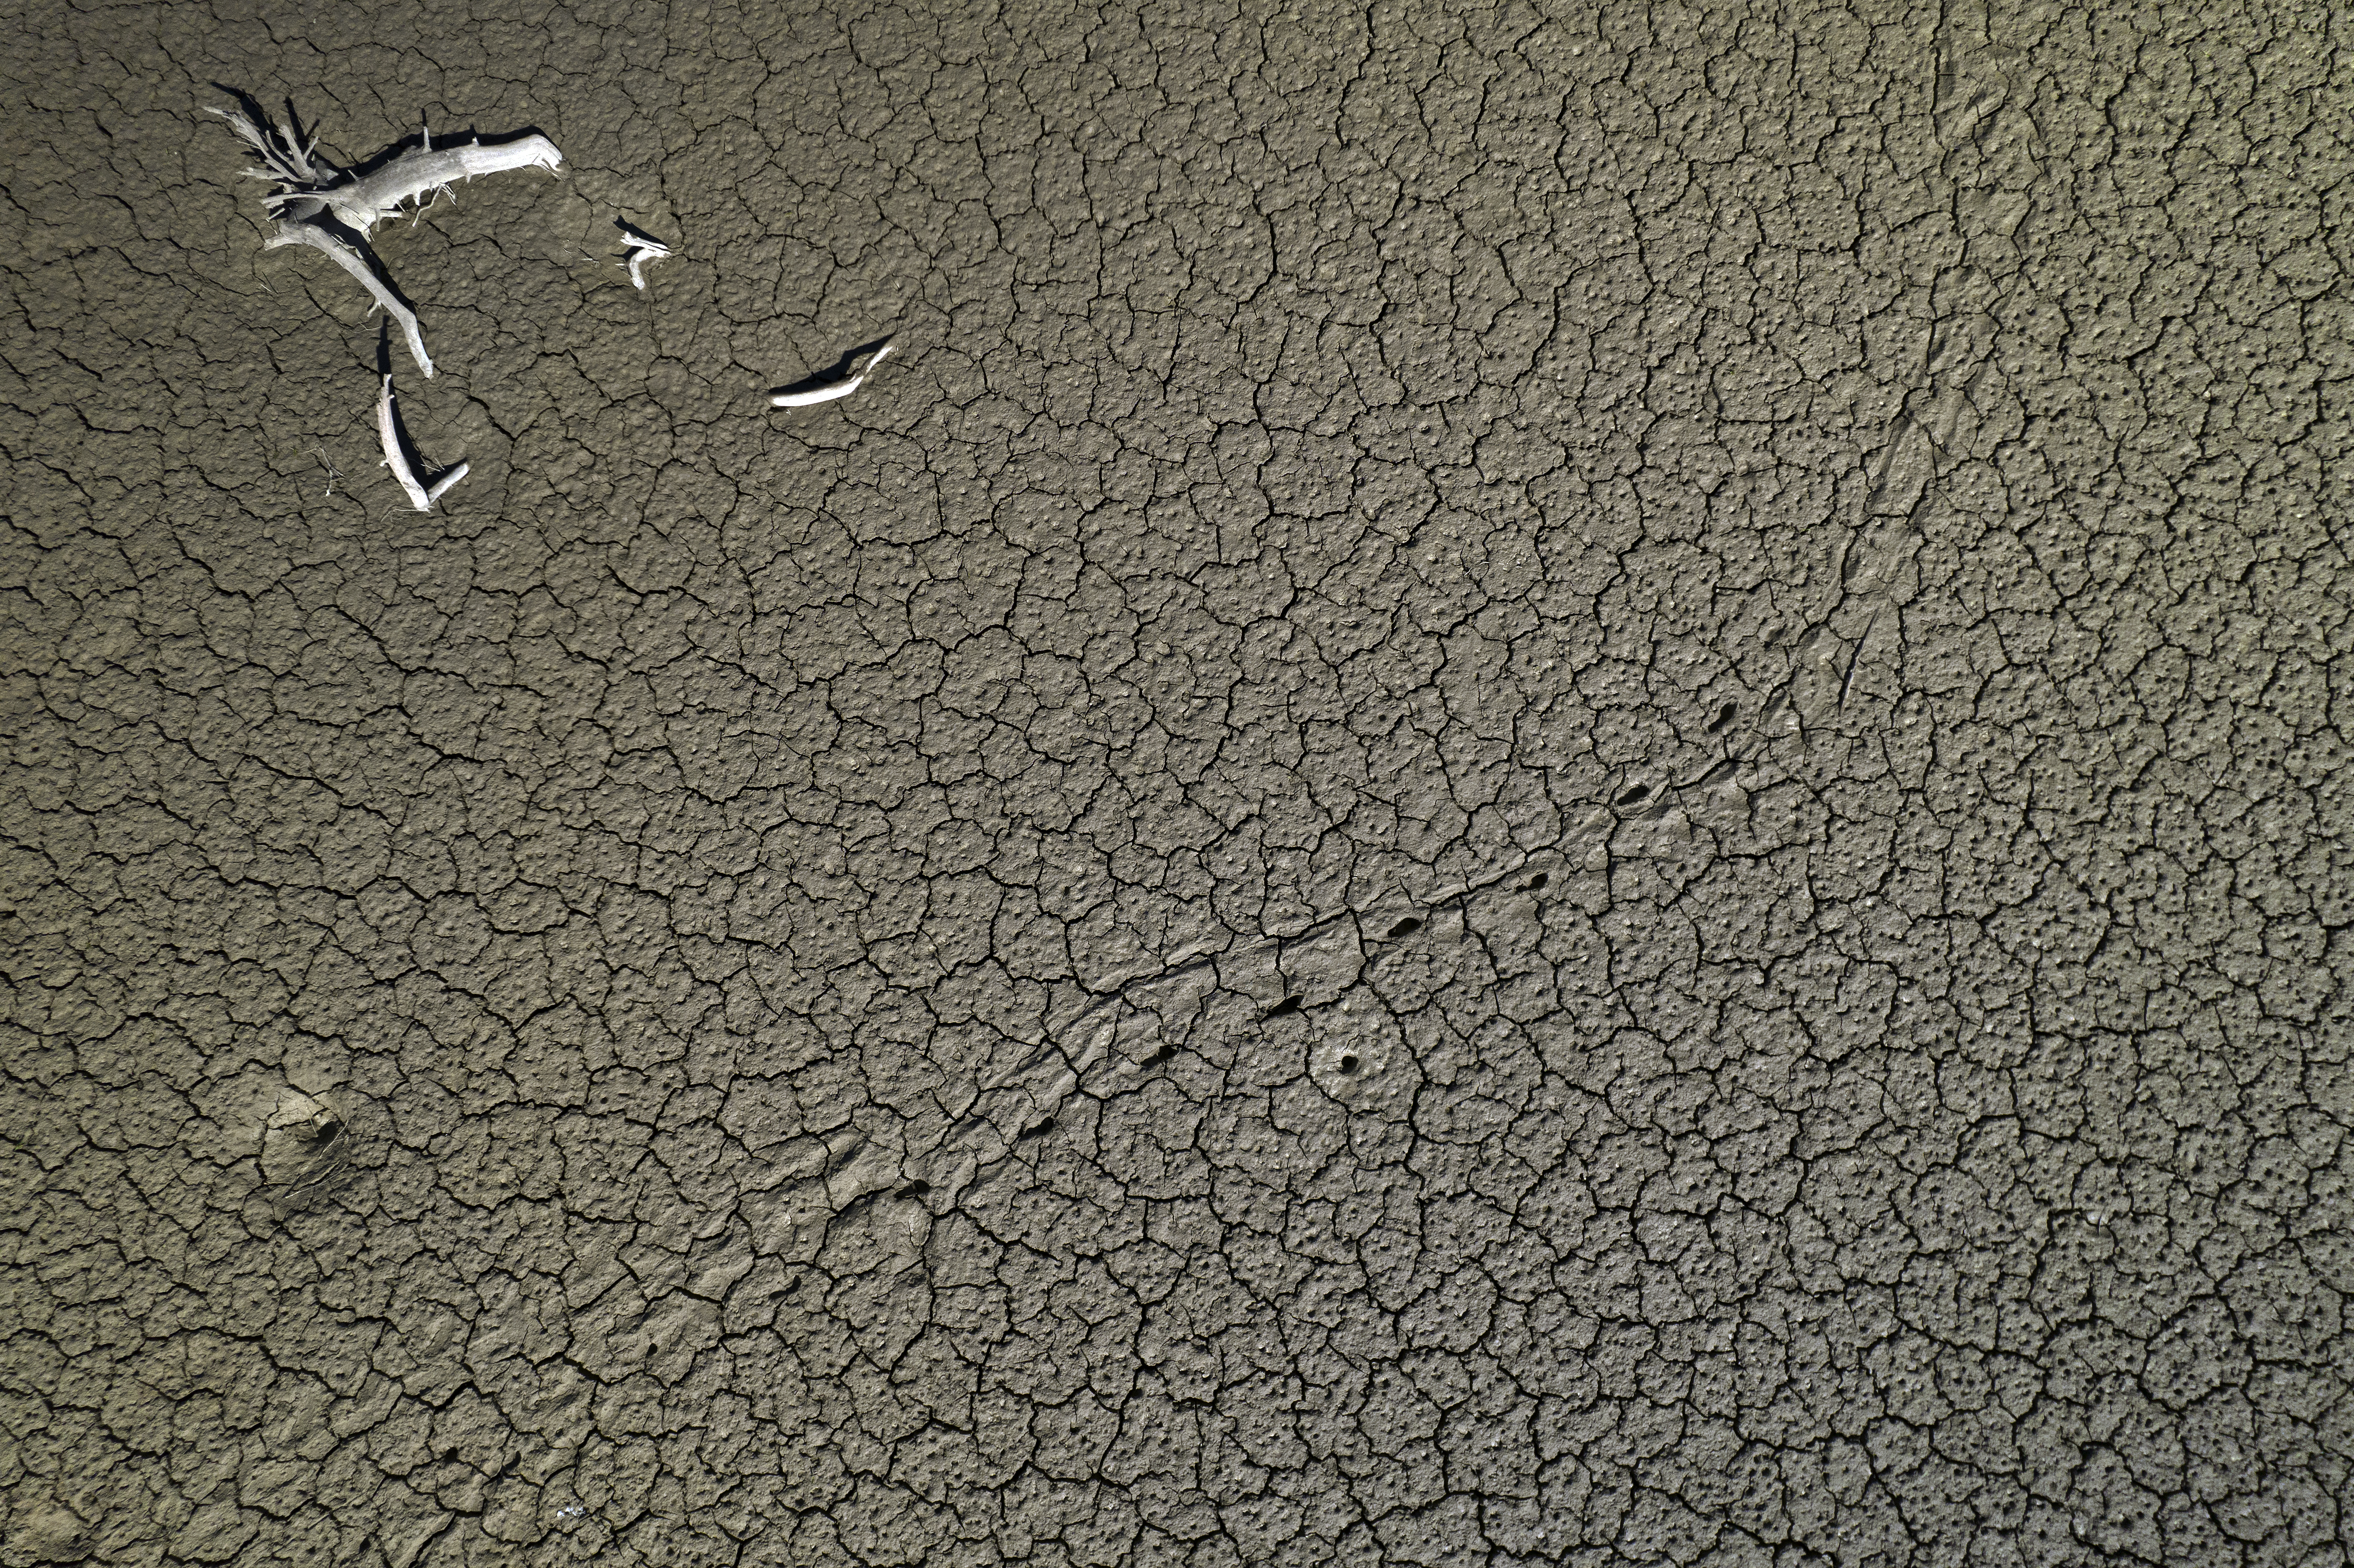 Imagen tomada desde un dron de la tierra cuarteada del pantano de Yesa, entre Navarra y Zaragoza.